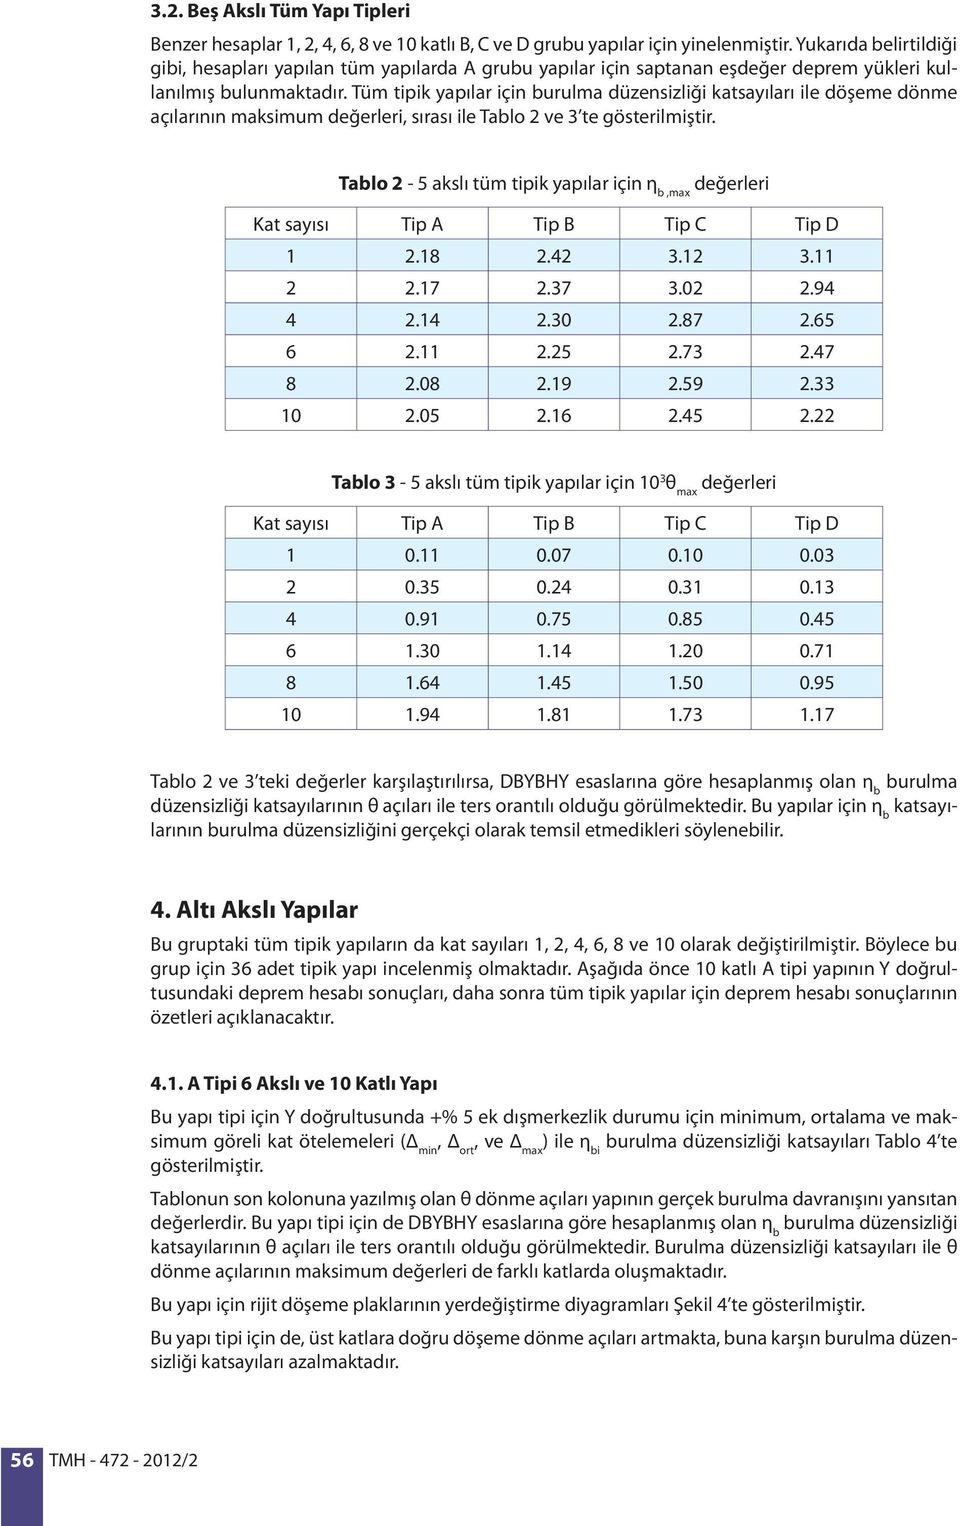 Tüm tipik yapılar için burulma düzensizliği katsayıları ile döşeme dönme açılarının maksimum değerleri, sırası ile Tablo 2 ve 3 te gösterilmiştir.